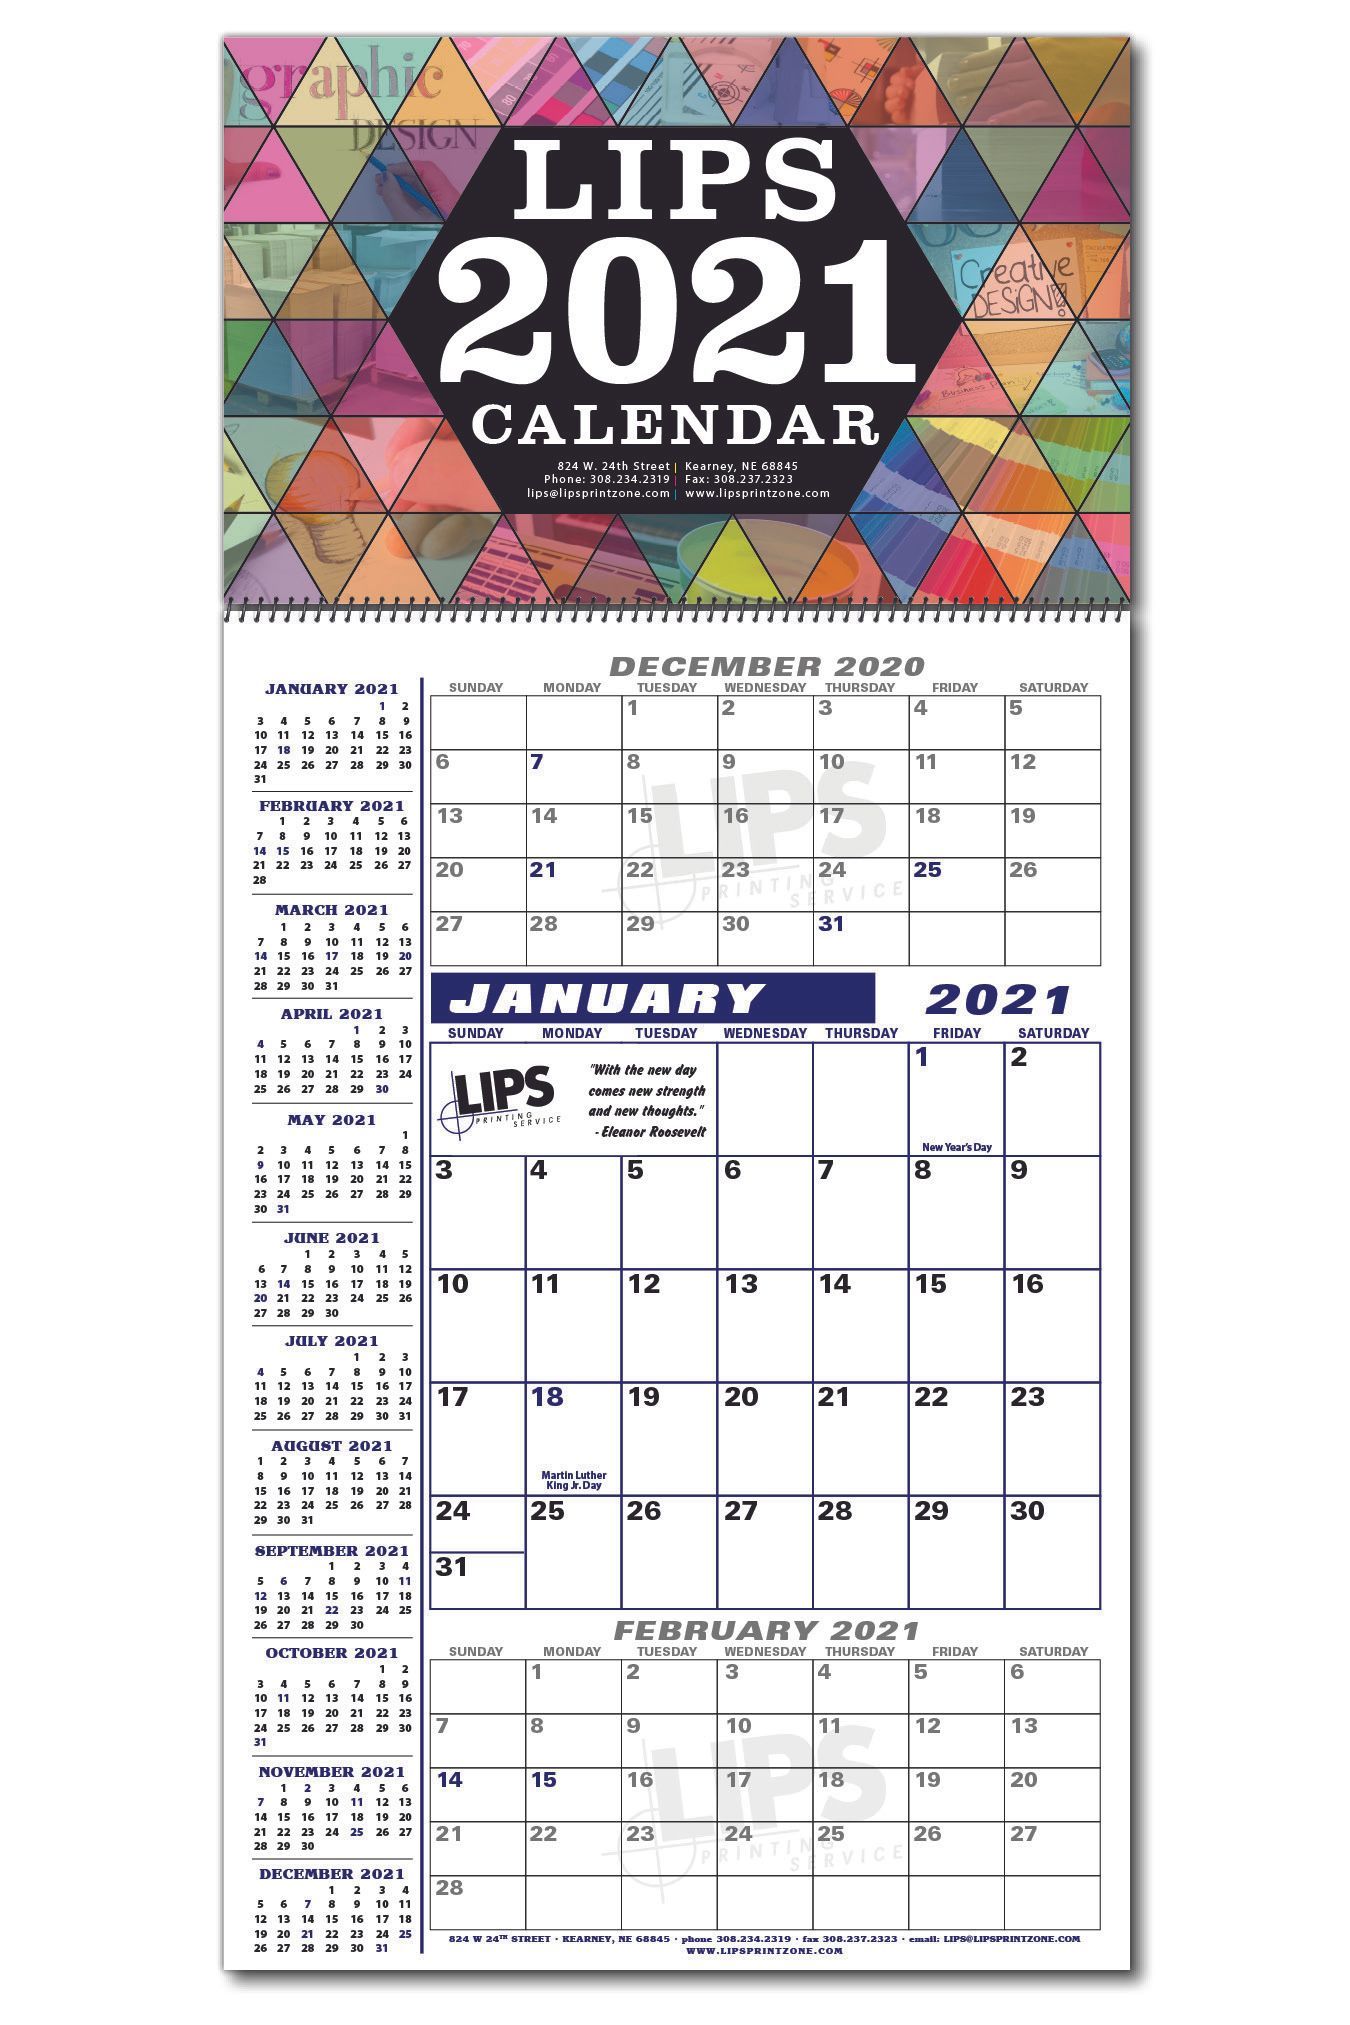 LIPS Calendar